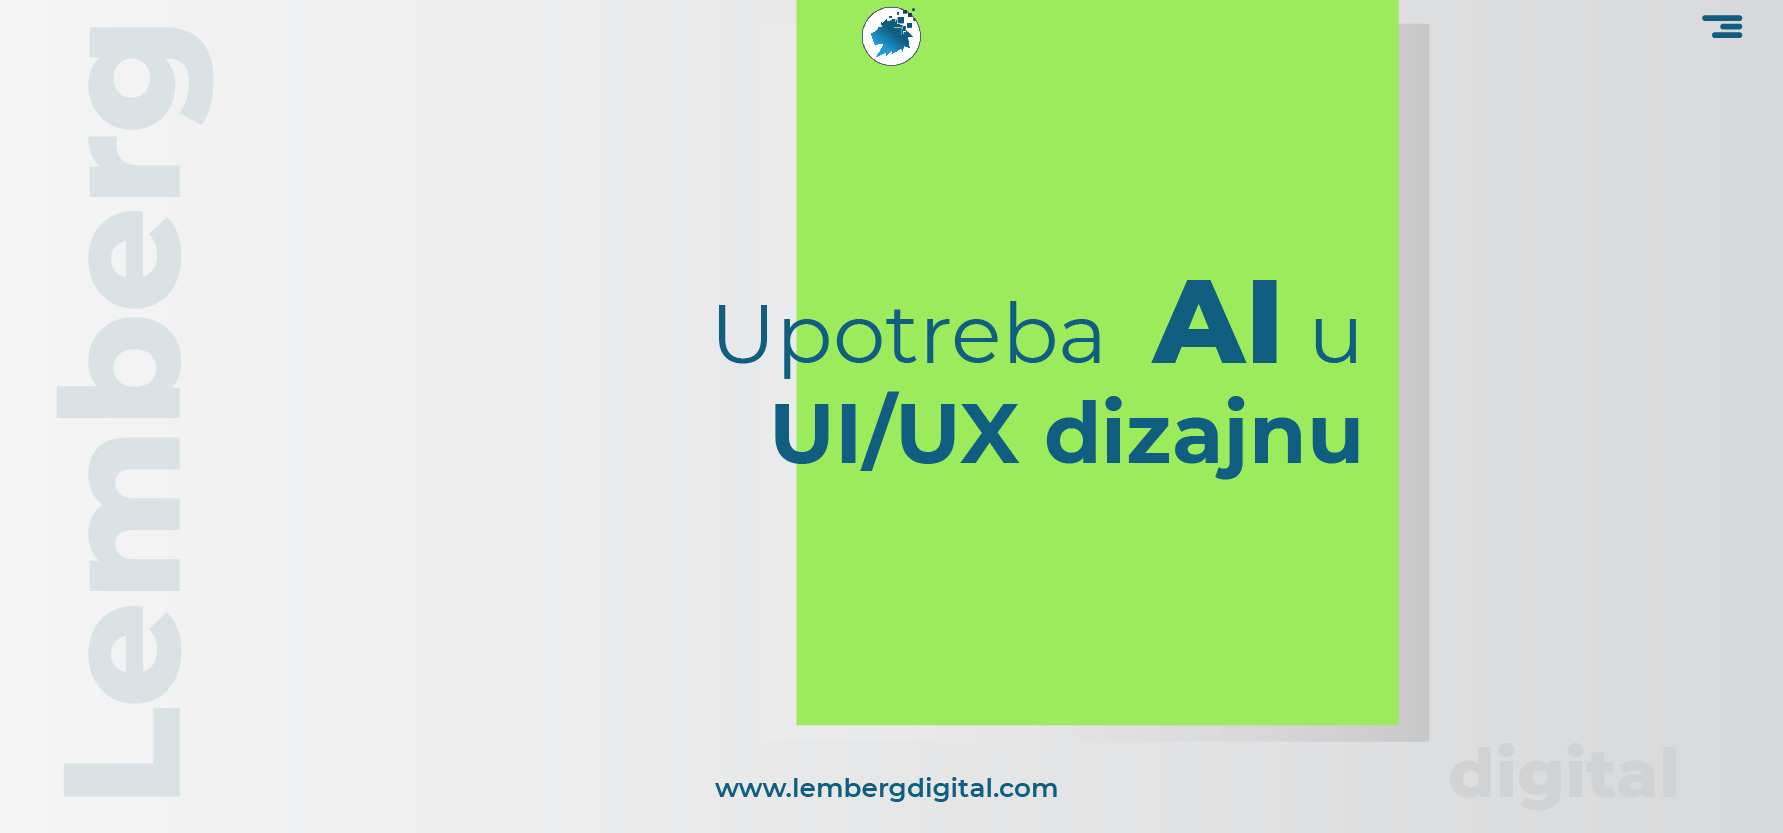 Upotreba veštačke inteligencije (AI) u UI/UX dizajnu